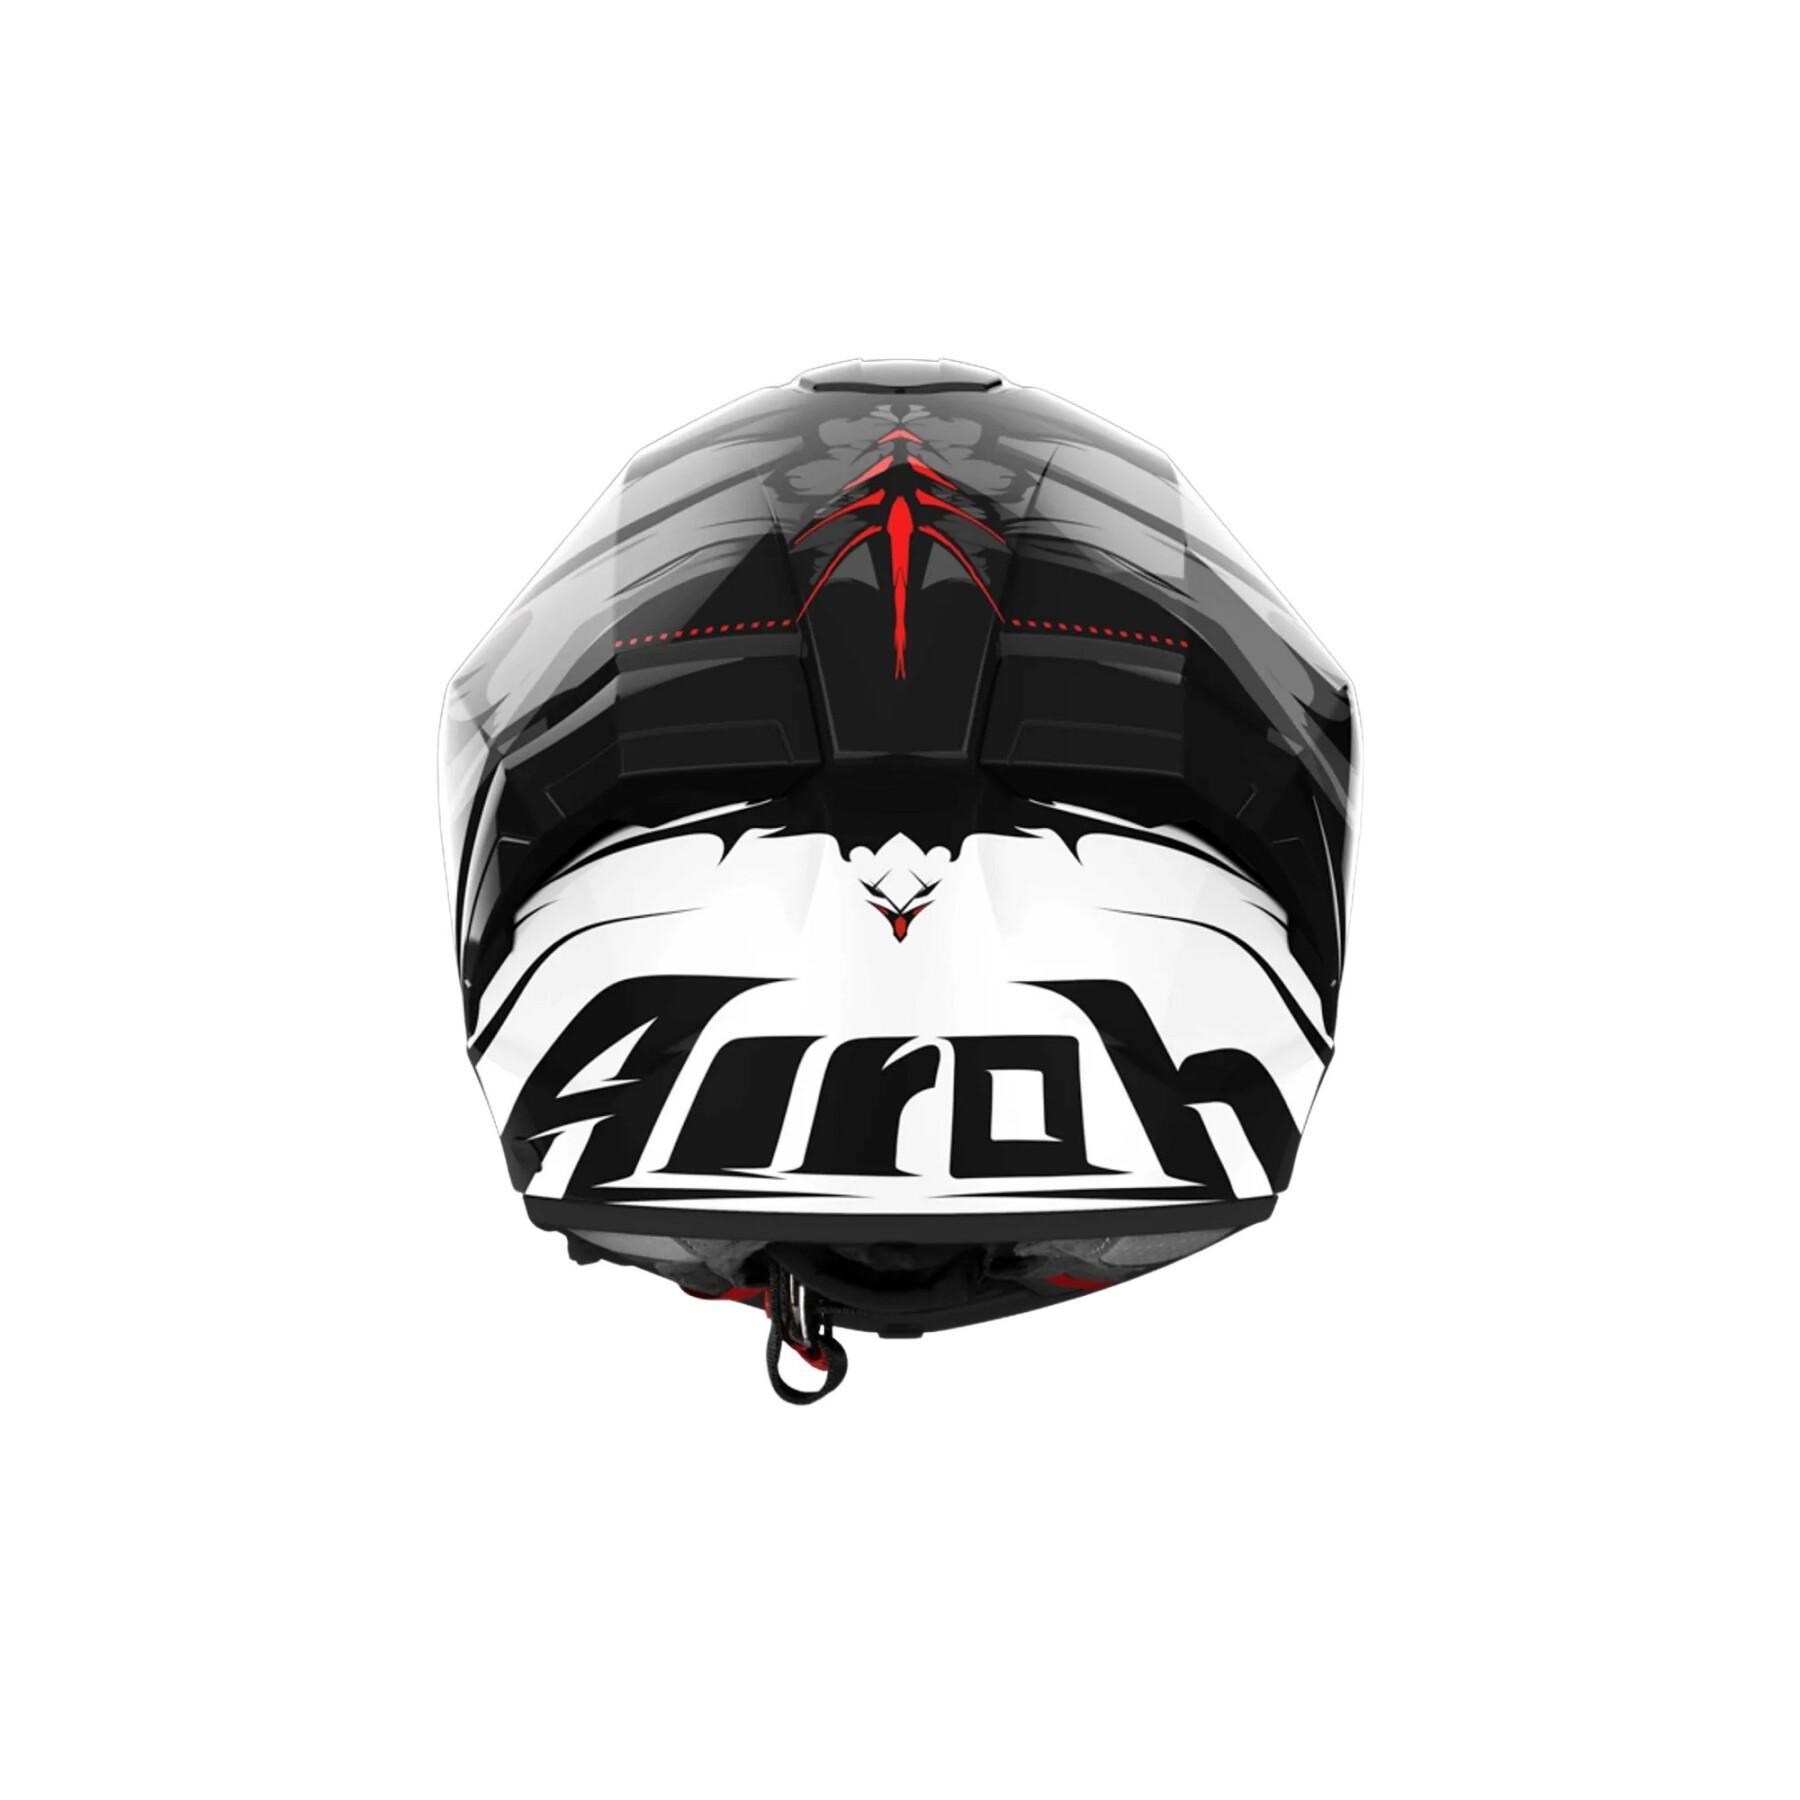 Full face motorcycle helmet Airoh Matryx Nytro